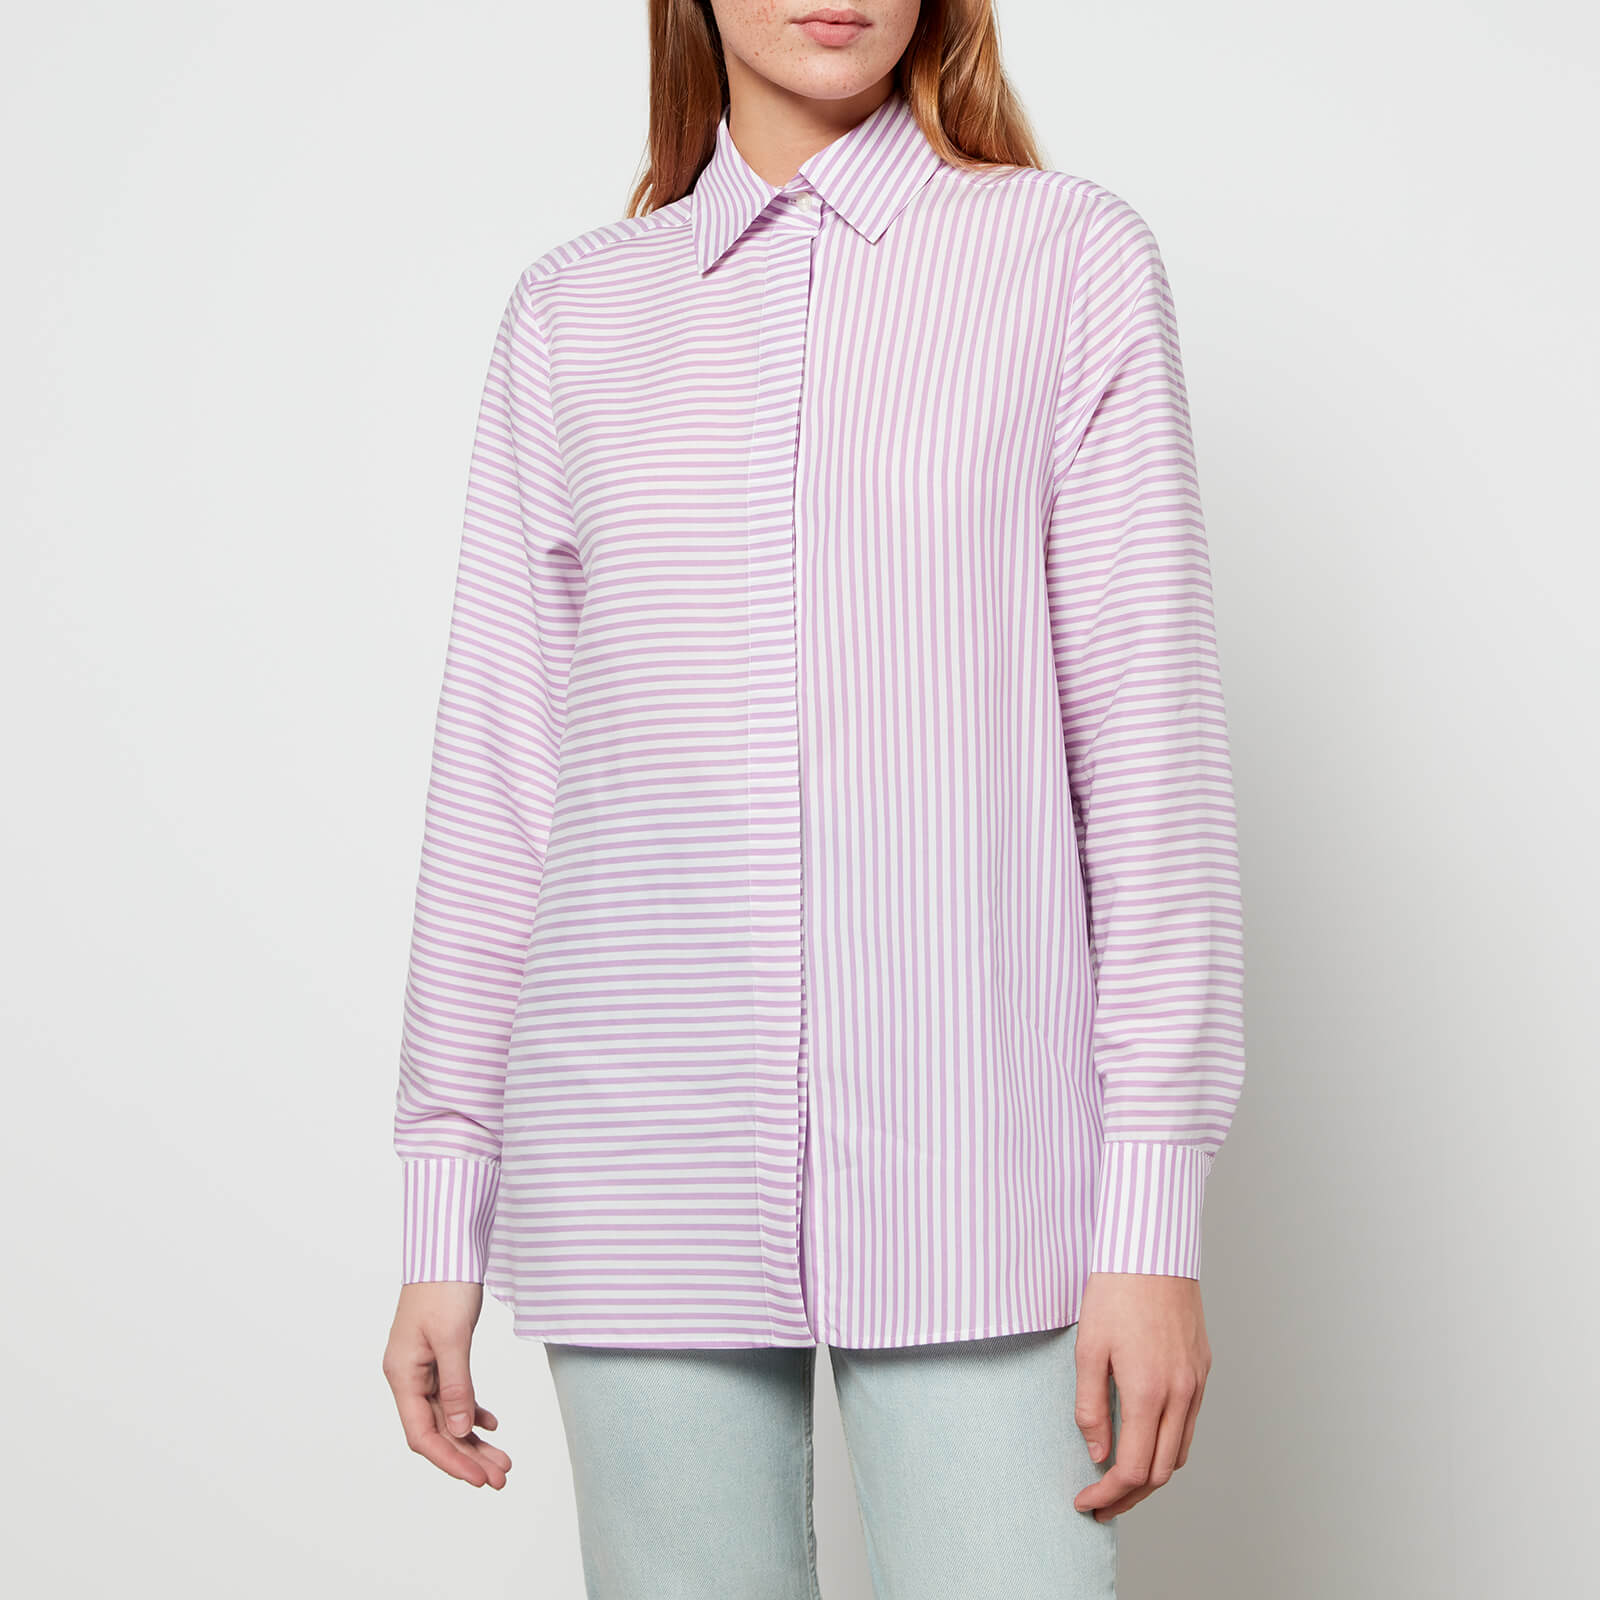 Etre Cecile Women's Classic Shirt - Purple White Stripe